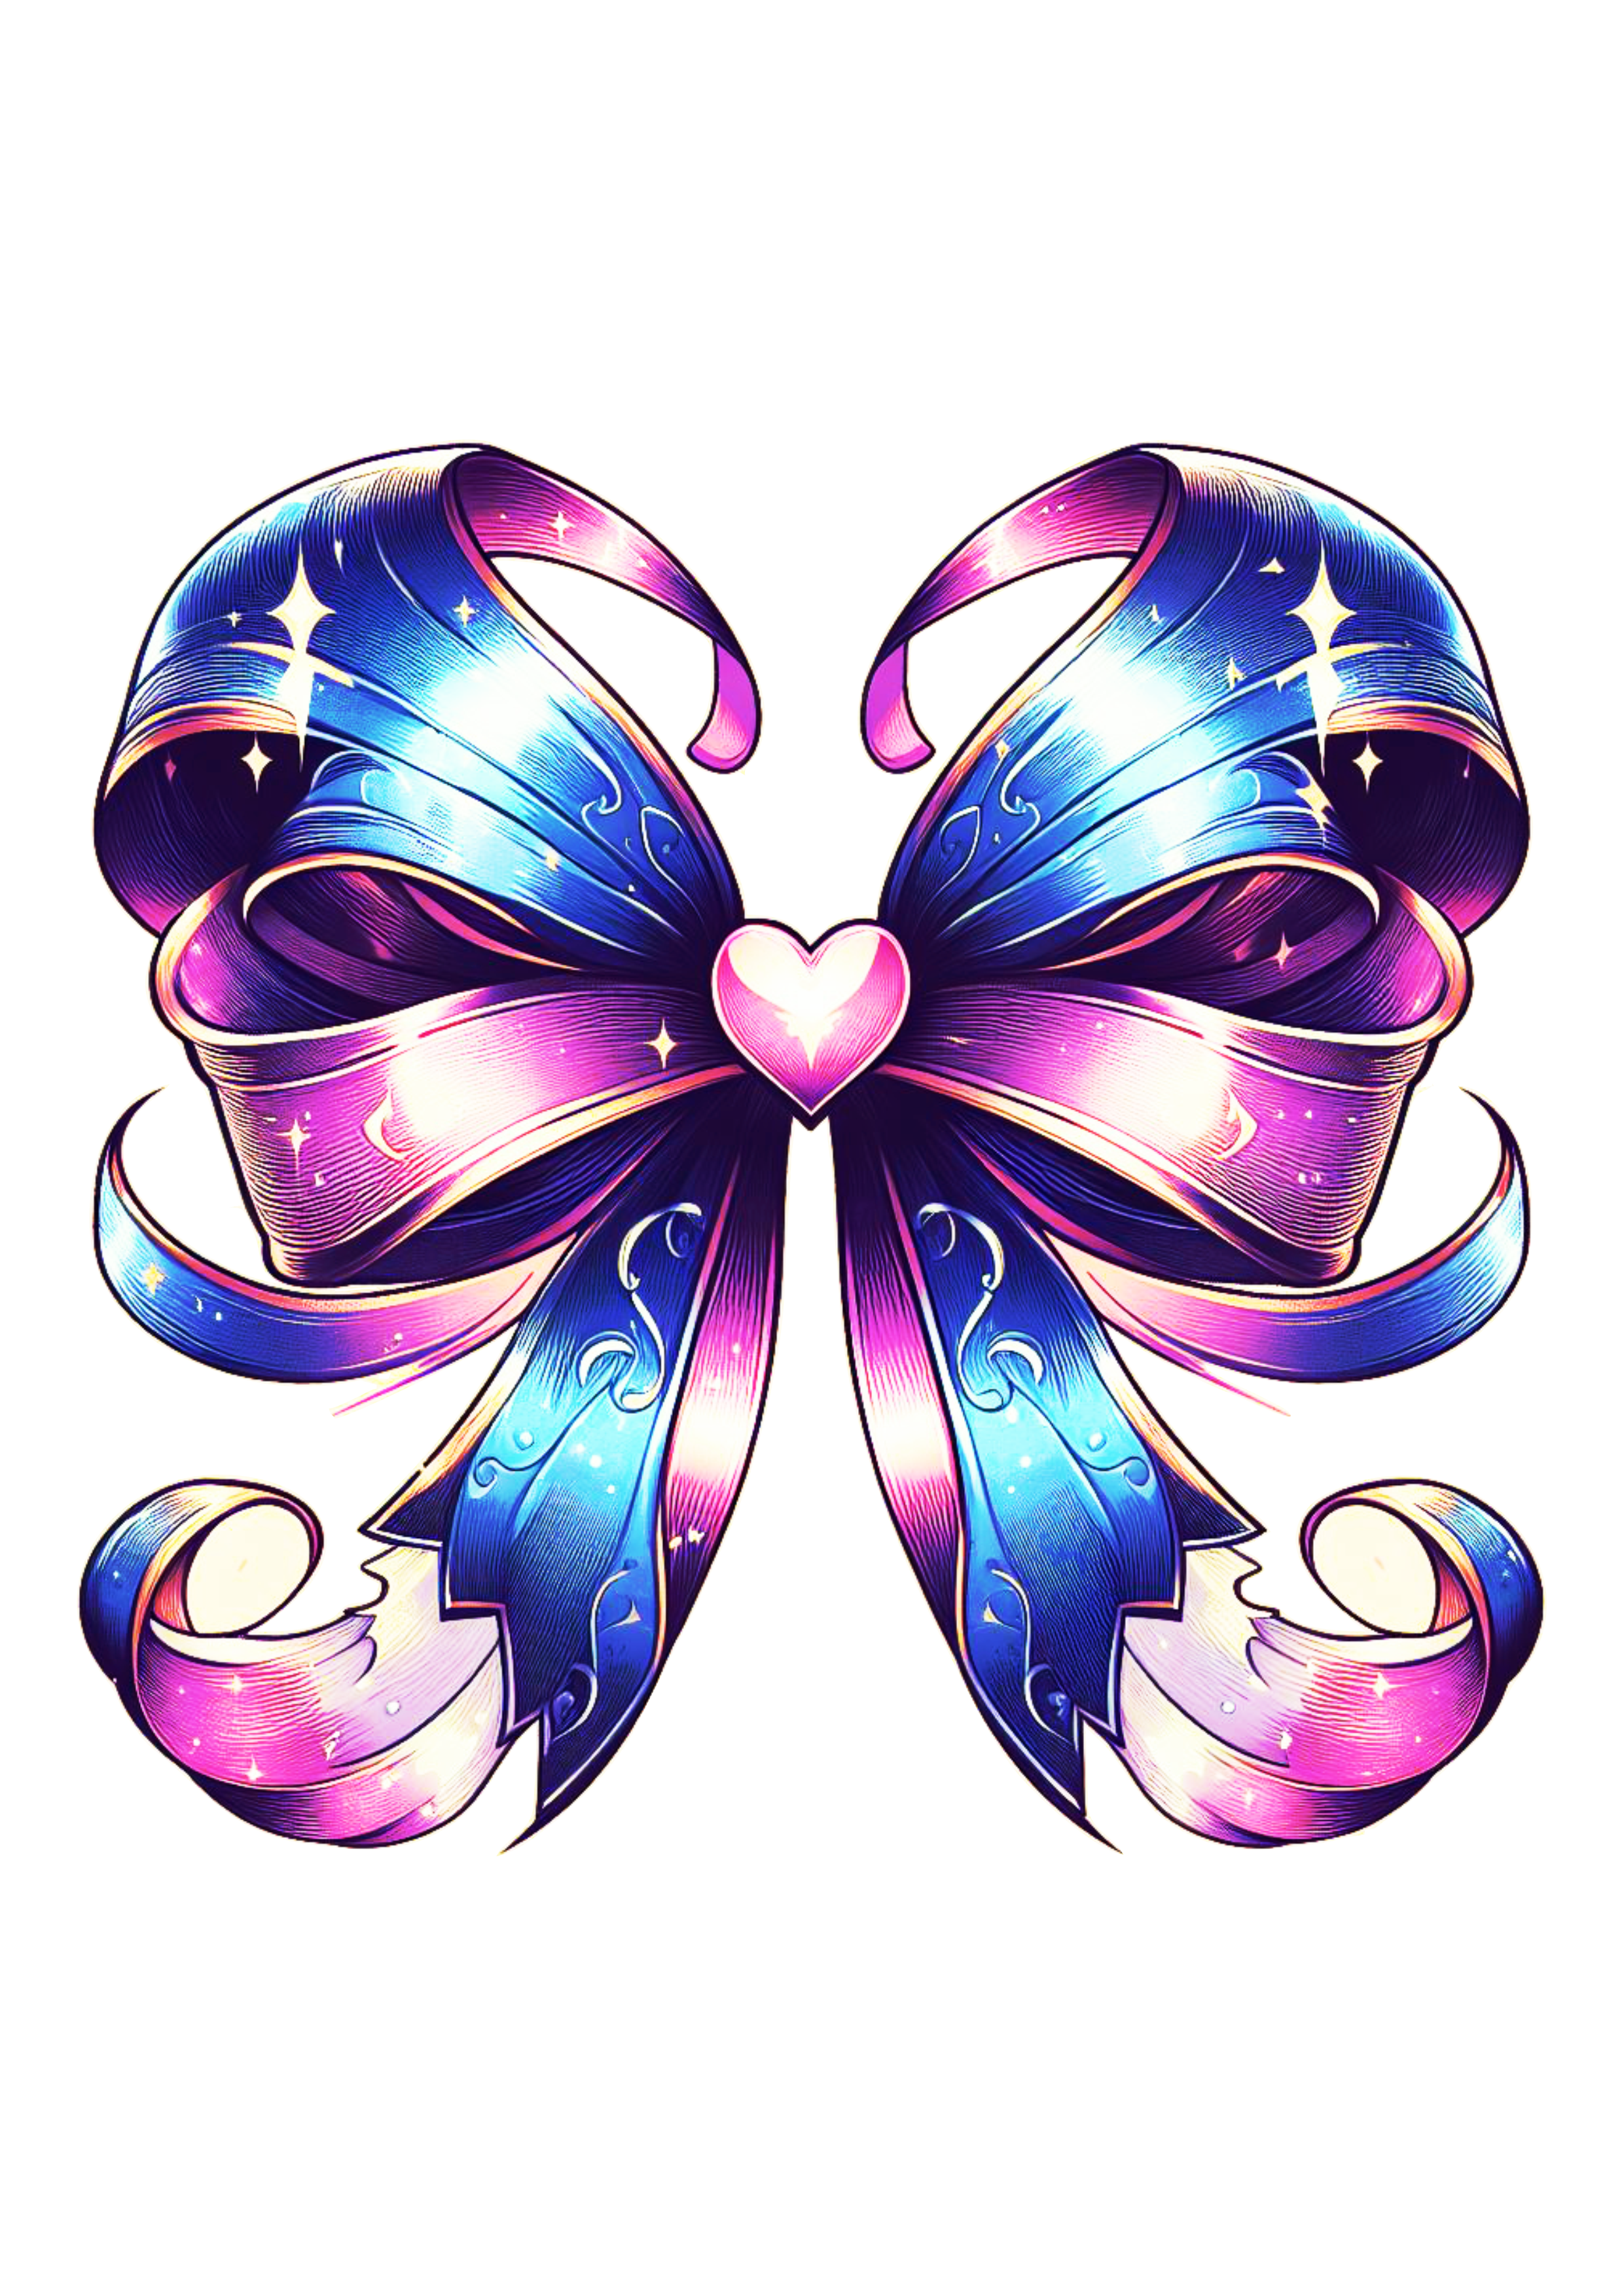 Lacinho lilás em formato de coração design decoração artes gráficas png